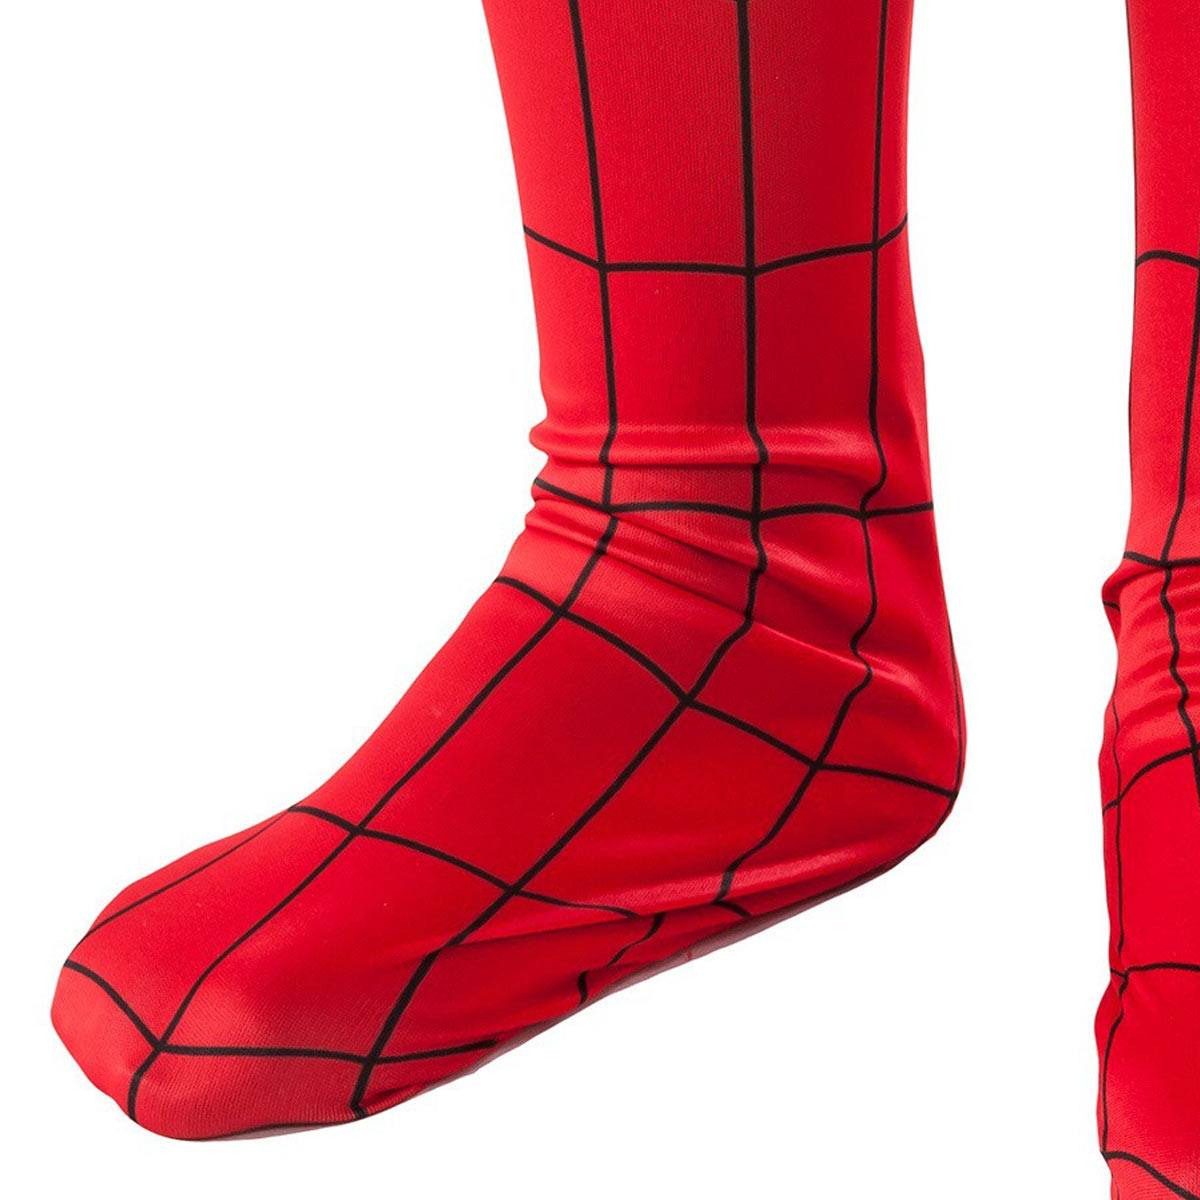 スパイダーマン ブーツカバー 靴 コスチューム 子供用 コスプレ ハロウィン Holloween Spider-Man